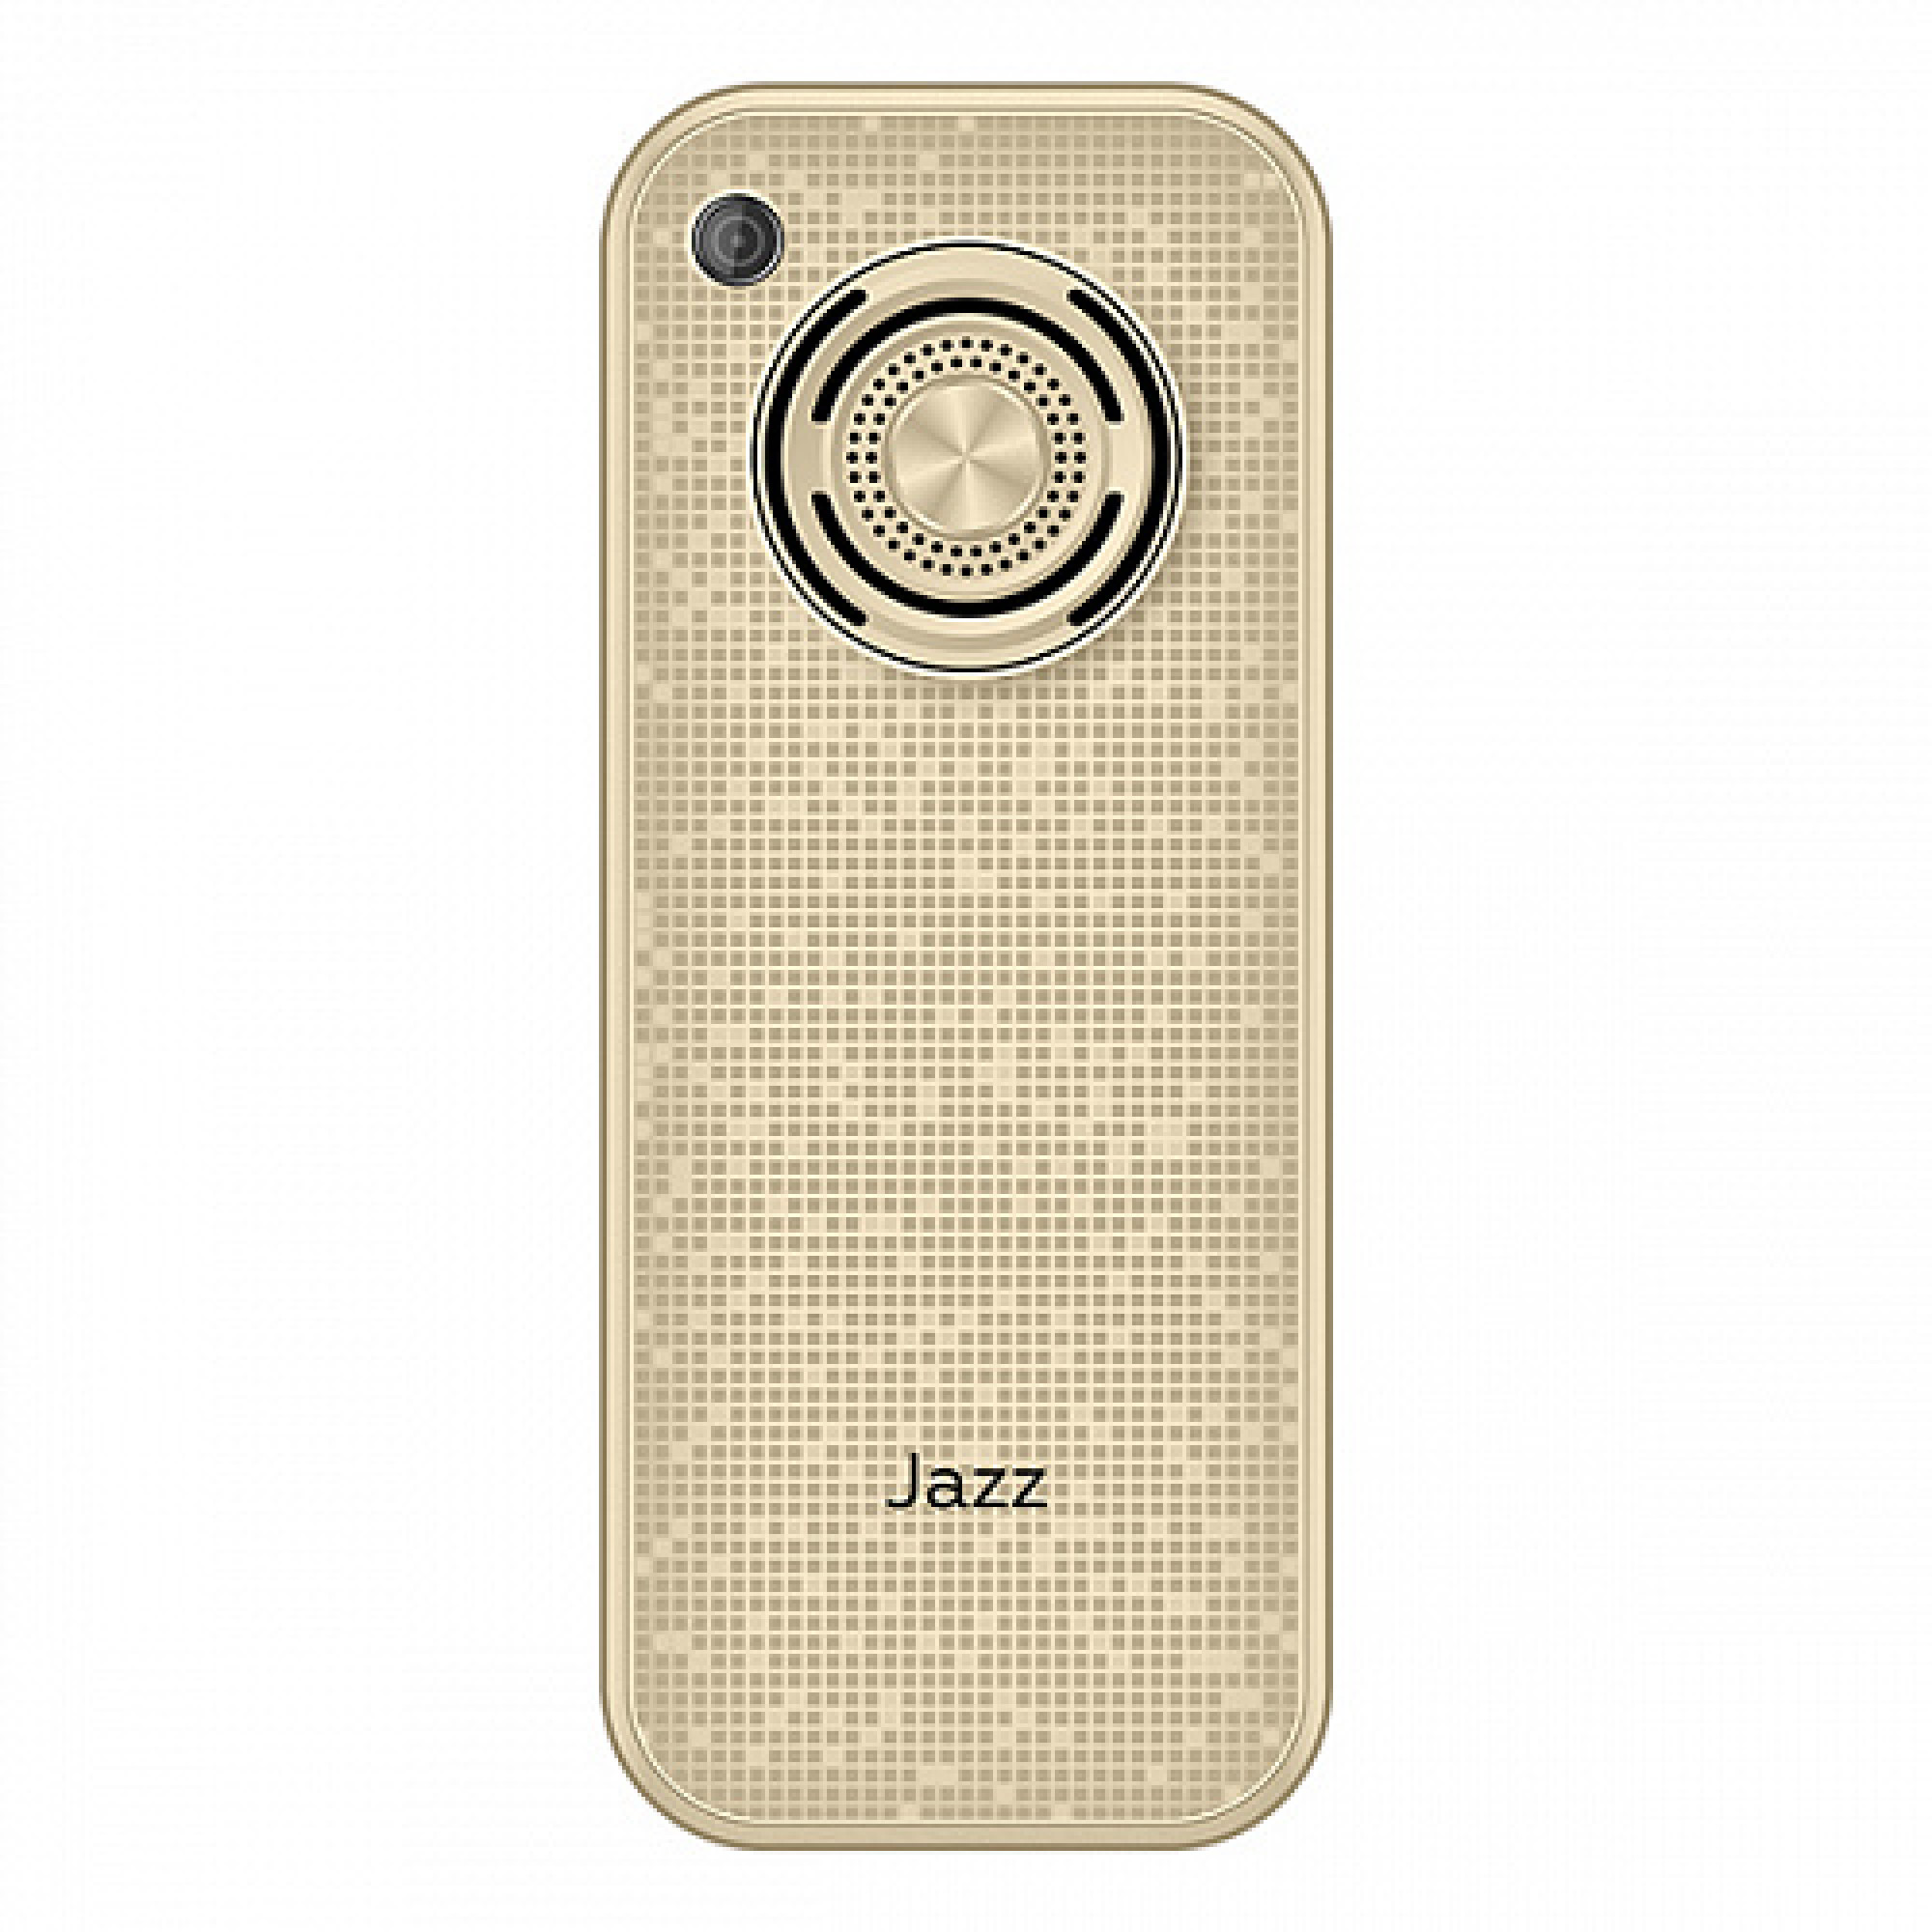 Мобильный телефон BQ BQ-2457 Jazz (золотистый)